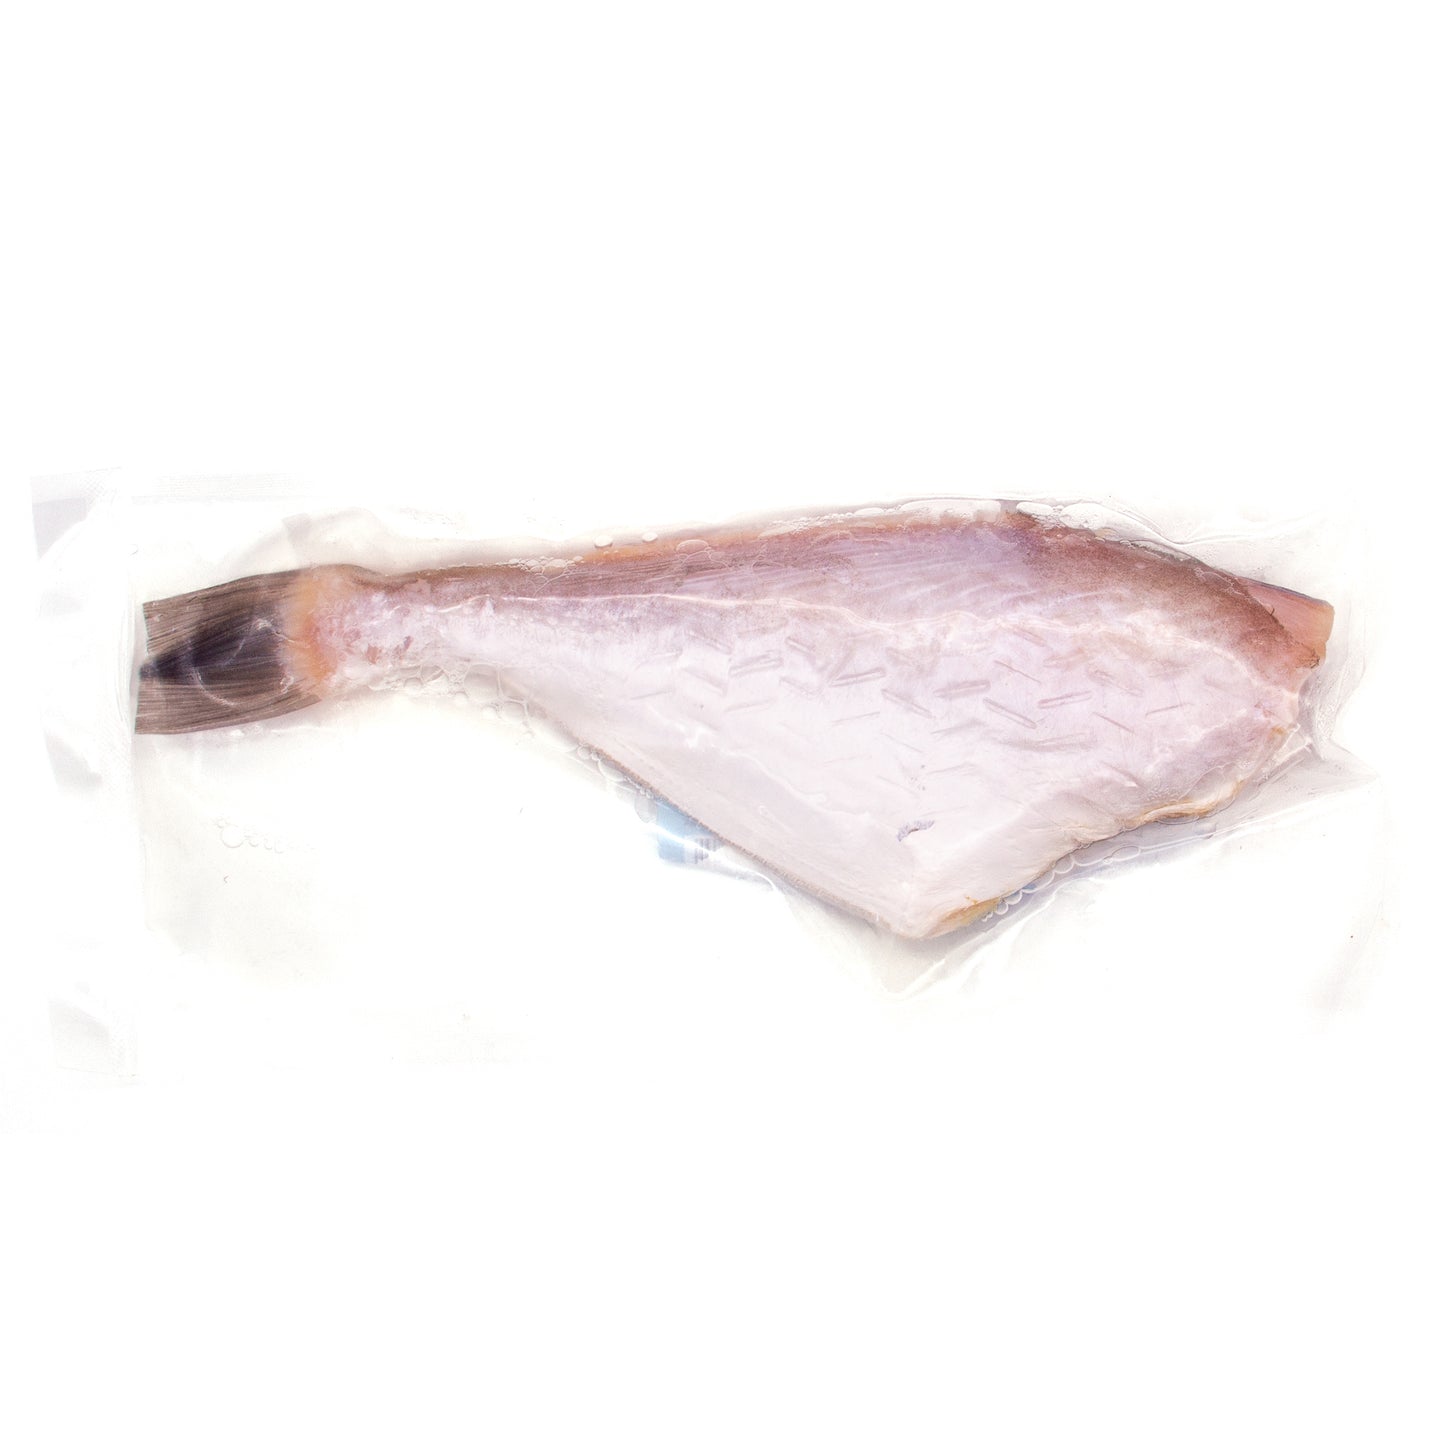 Leatherjacket Fish 马面鱼 (剥皮鱼) (14-16 OZ)